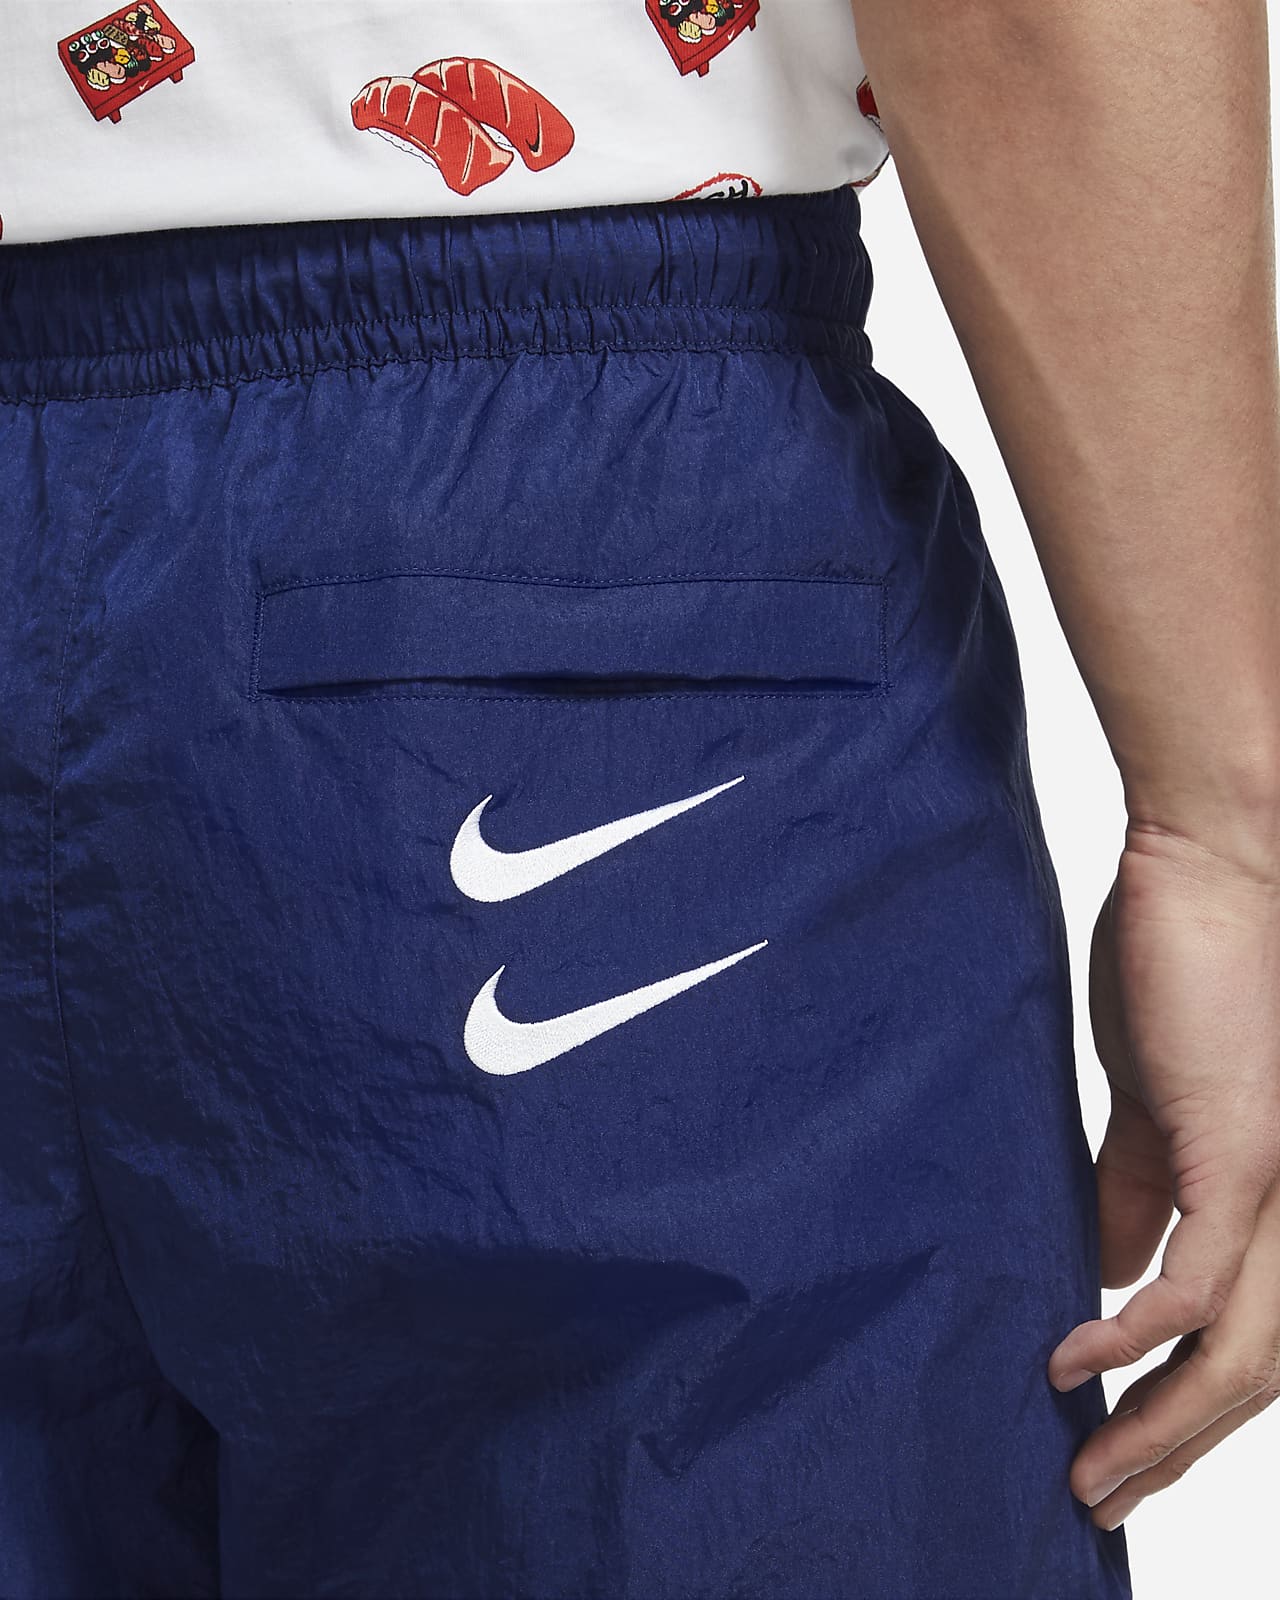 Nike Sportswear Swoosh Men's Woven Pants